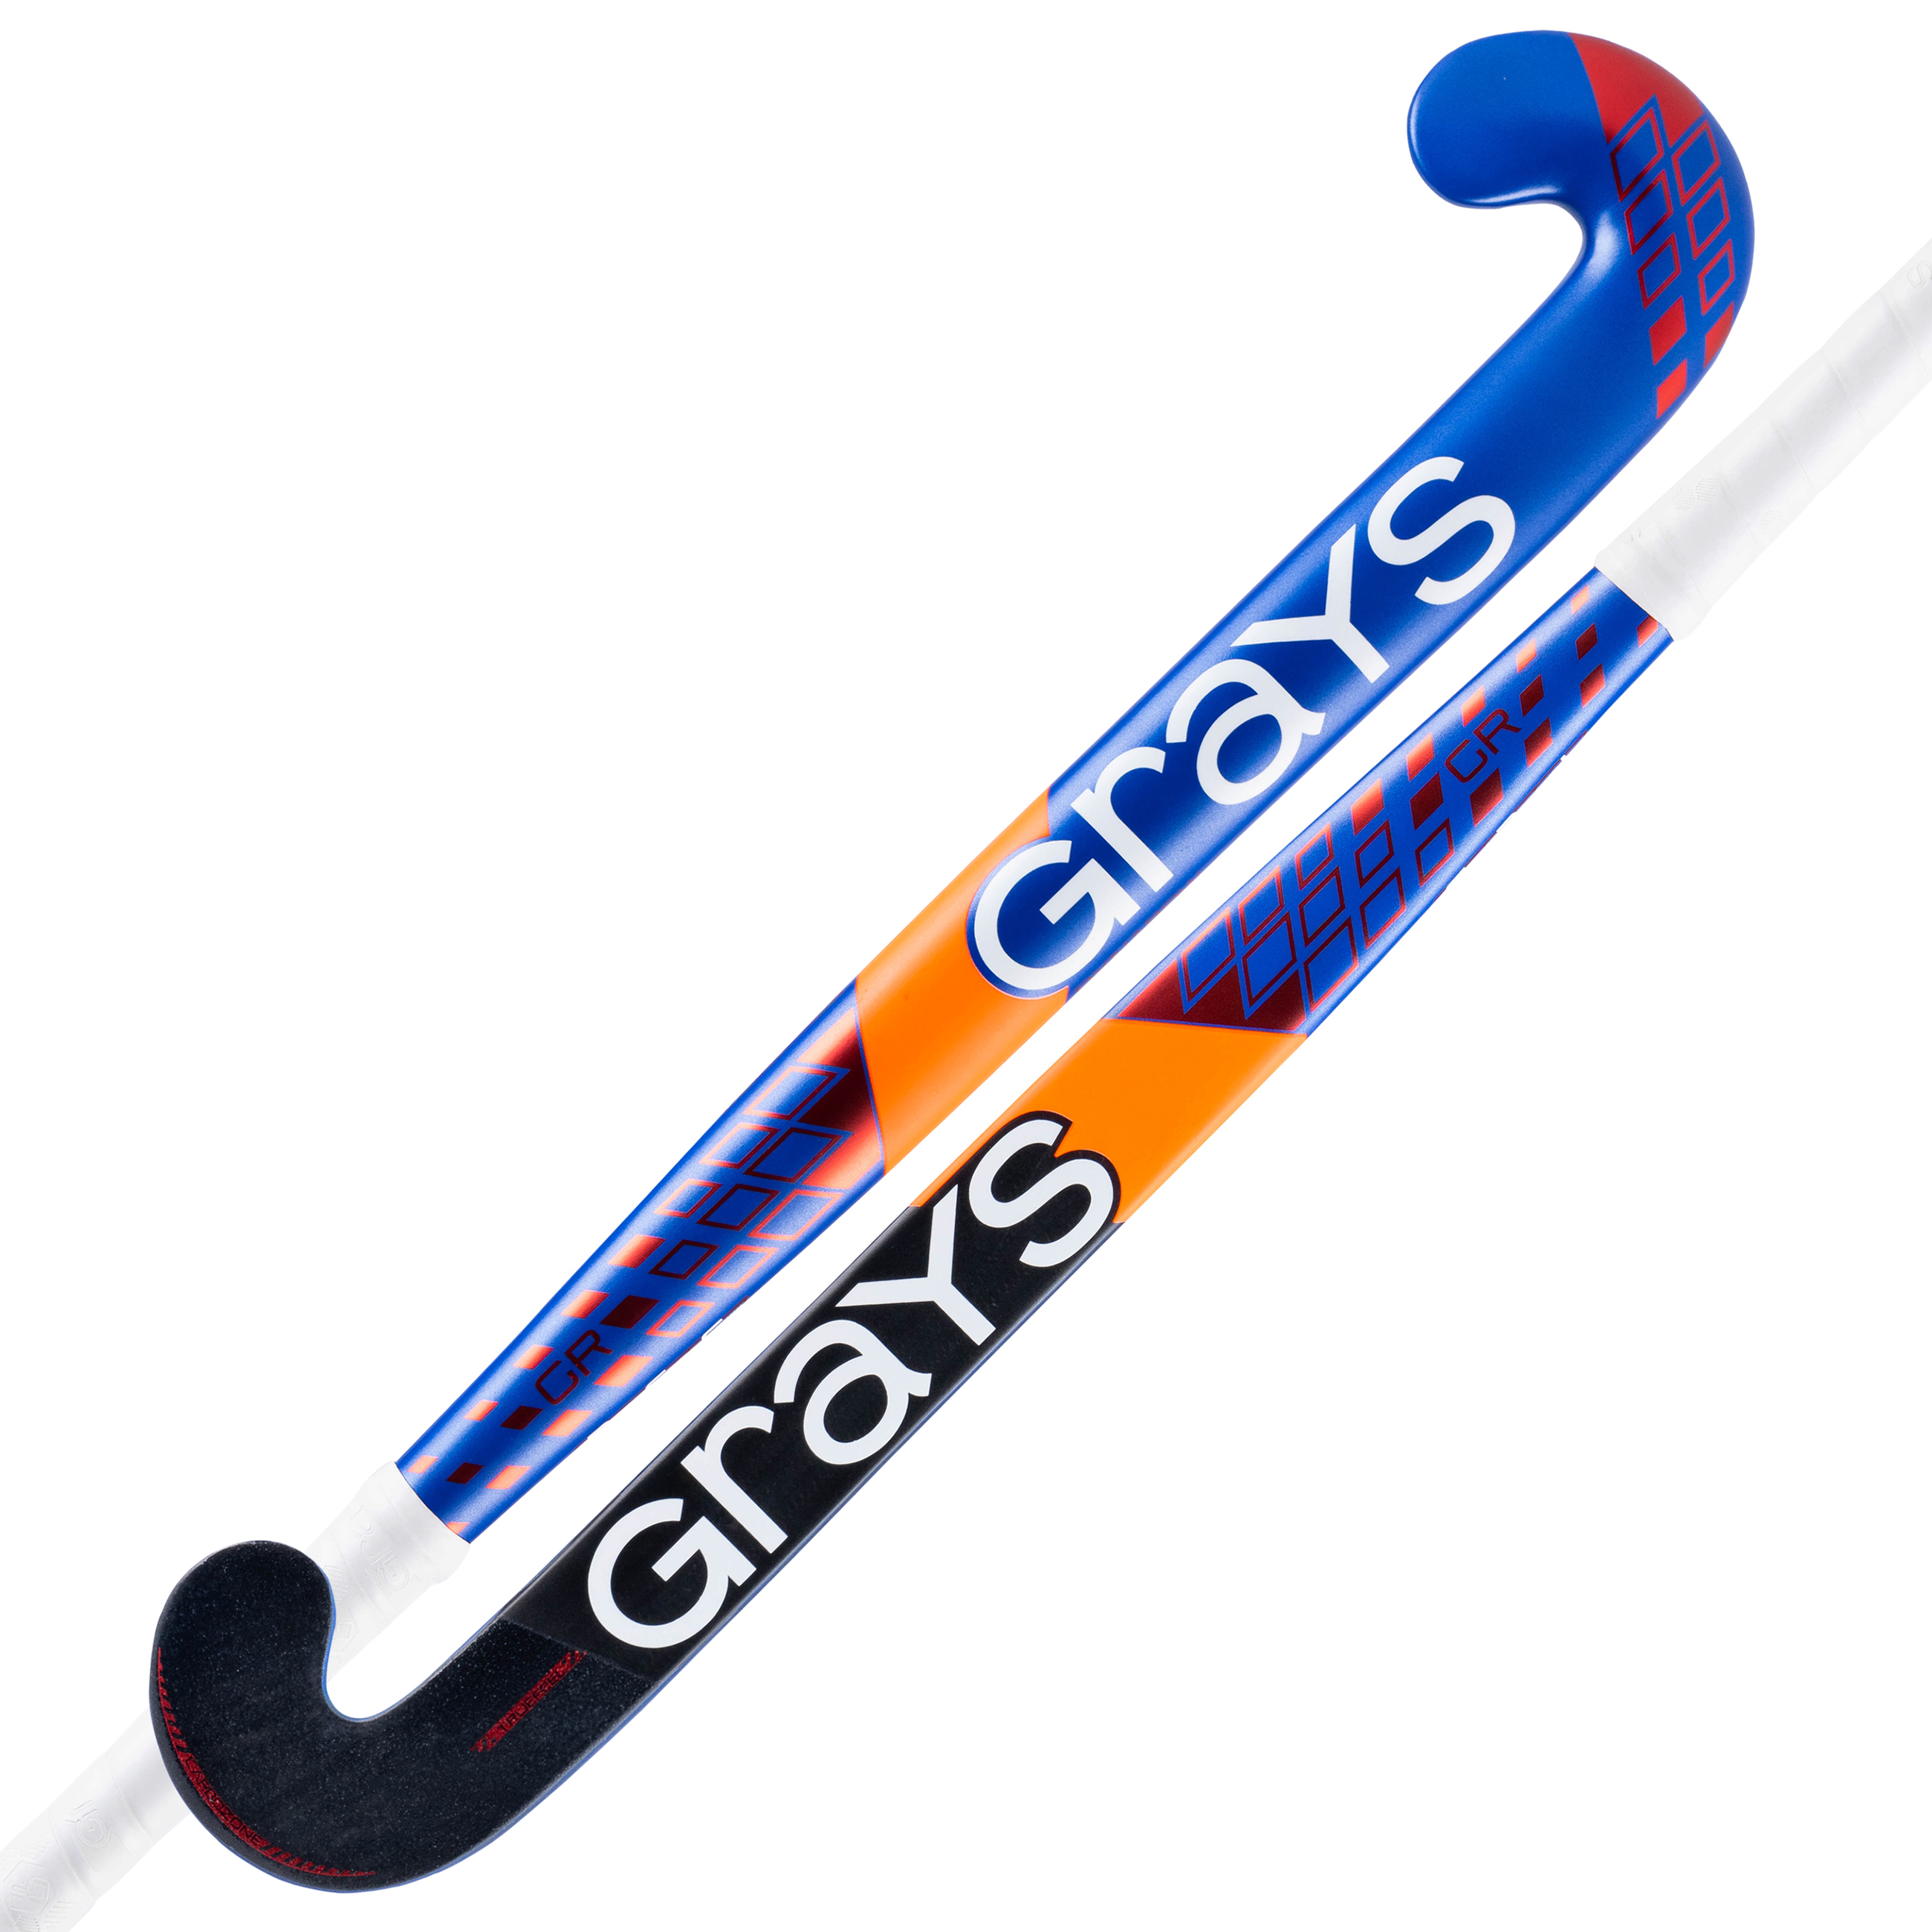 Hockeystick GR4000 Dynabow Blauw Rood